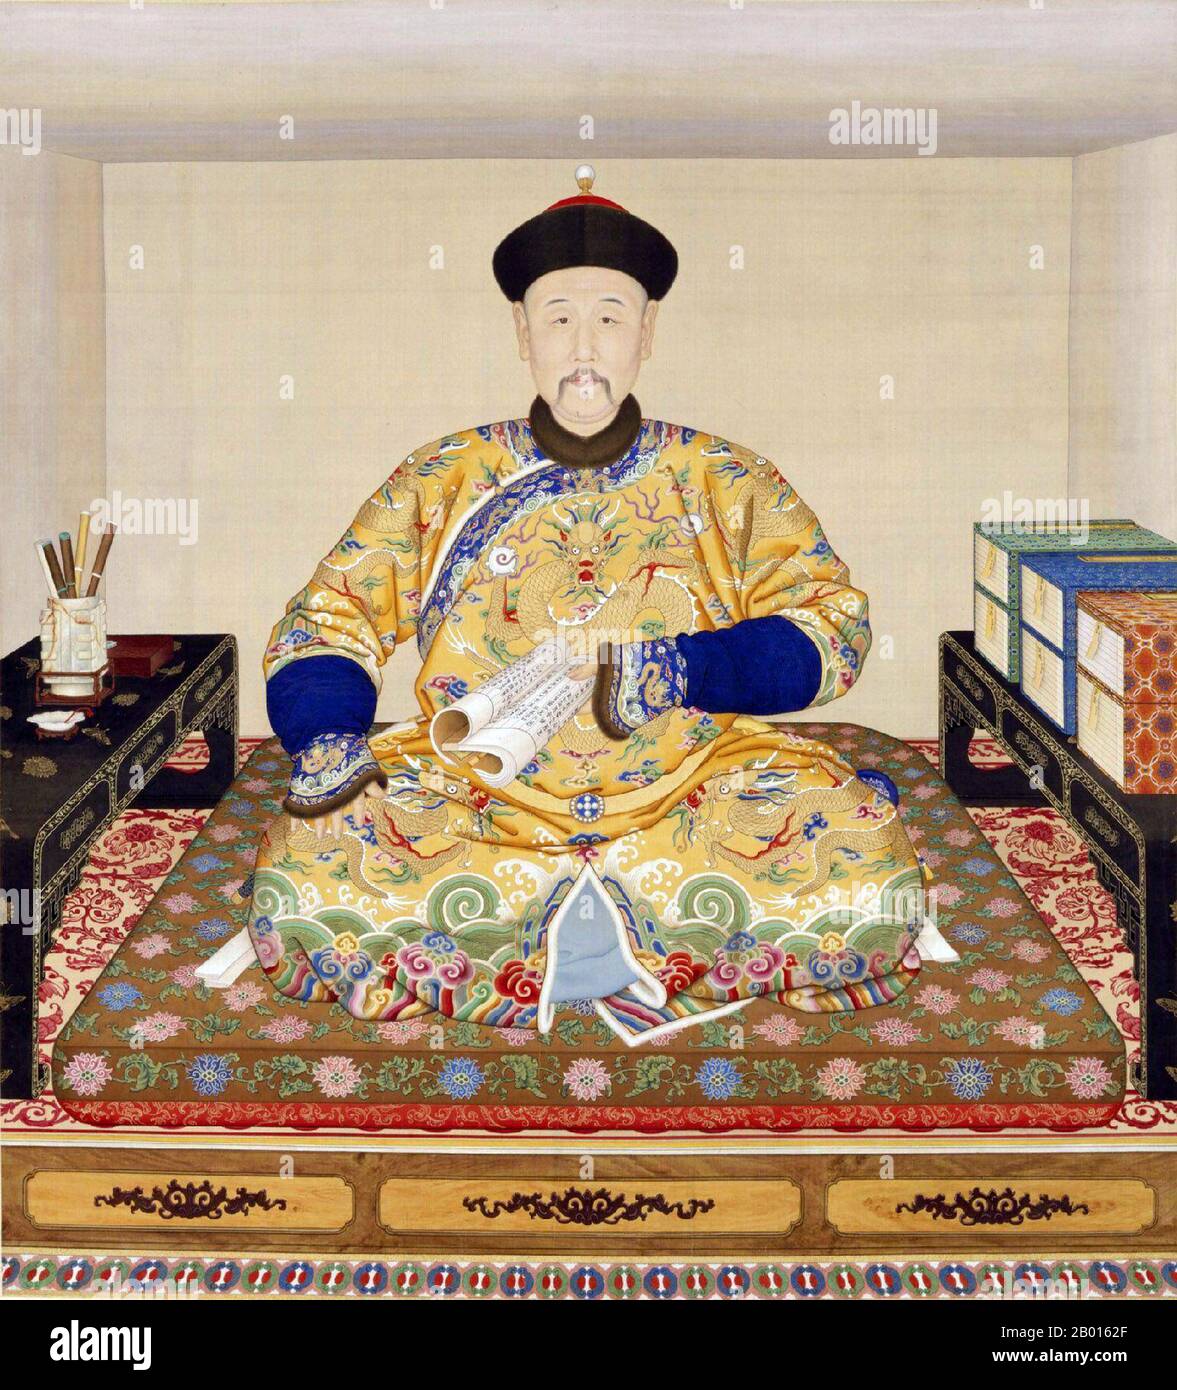 Cina: L'imperatore Qianlong (25 settembre 1711 - 7 febbraio 1799), al suo tavolo di scrittura. Dipinto a scroll appeso di Giuseppe Castiglione (1688-1766), c.. 1750. L'imperatore Qianlong, nato Hongli e il tempio nome Gaozong, fu il quinto imperatore della dinastia Qing. Quarto figlio dell'imperatore Yongzheng, regnò ufficialmente dal 1735 al 1796, prima di abdicare a favore di suo figlio, l'imperatore Jiaqing - un atto filiale per non governare più a lungo di suo nonno, l'imperatore Kangxi. Nonostante il suo pensionamento, mantenne il potere ultimo fino alla sua morte. Foto Stock